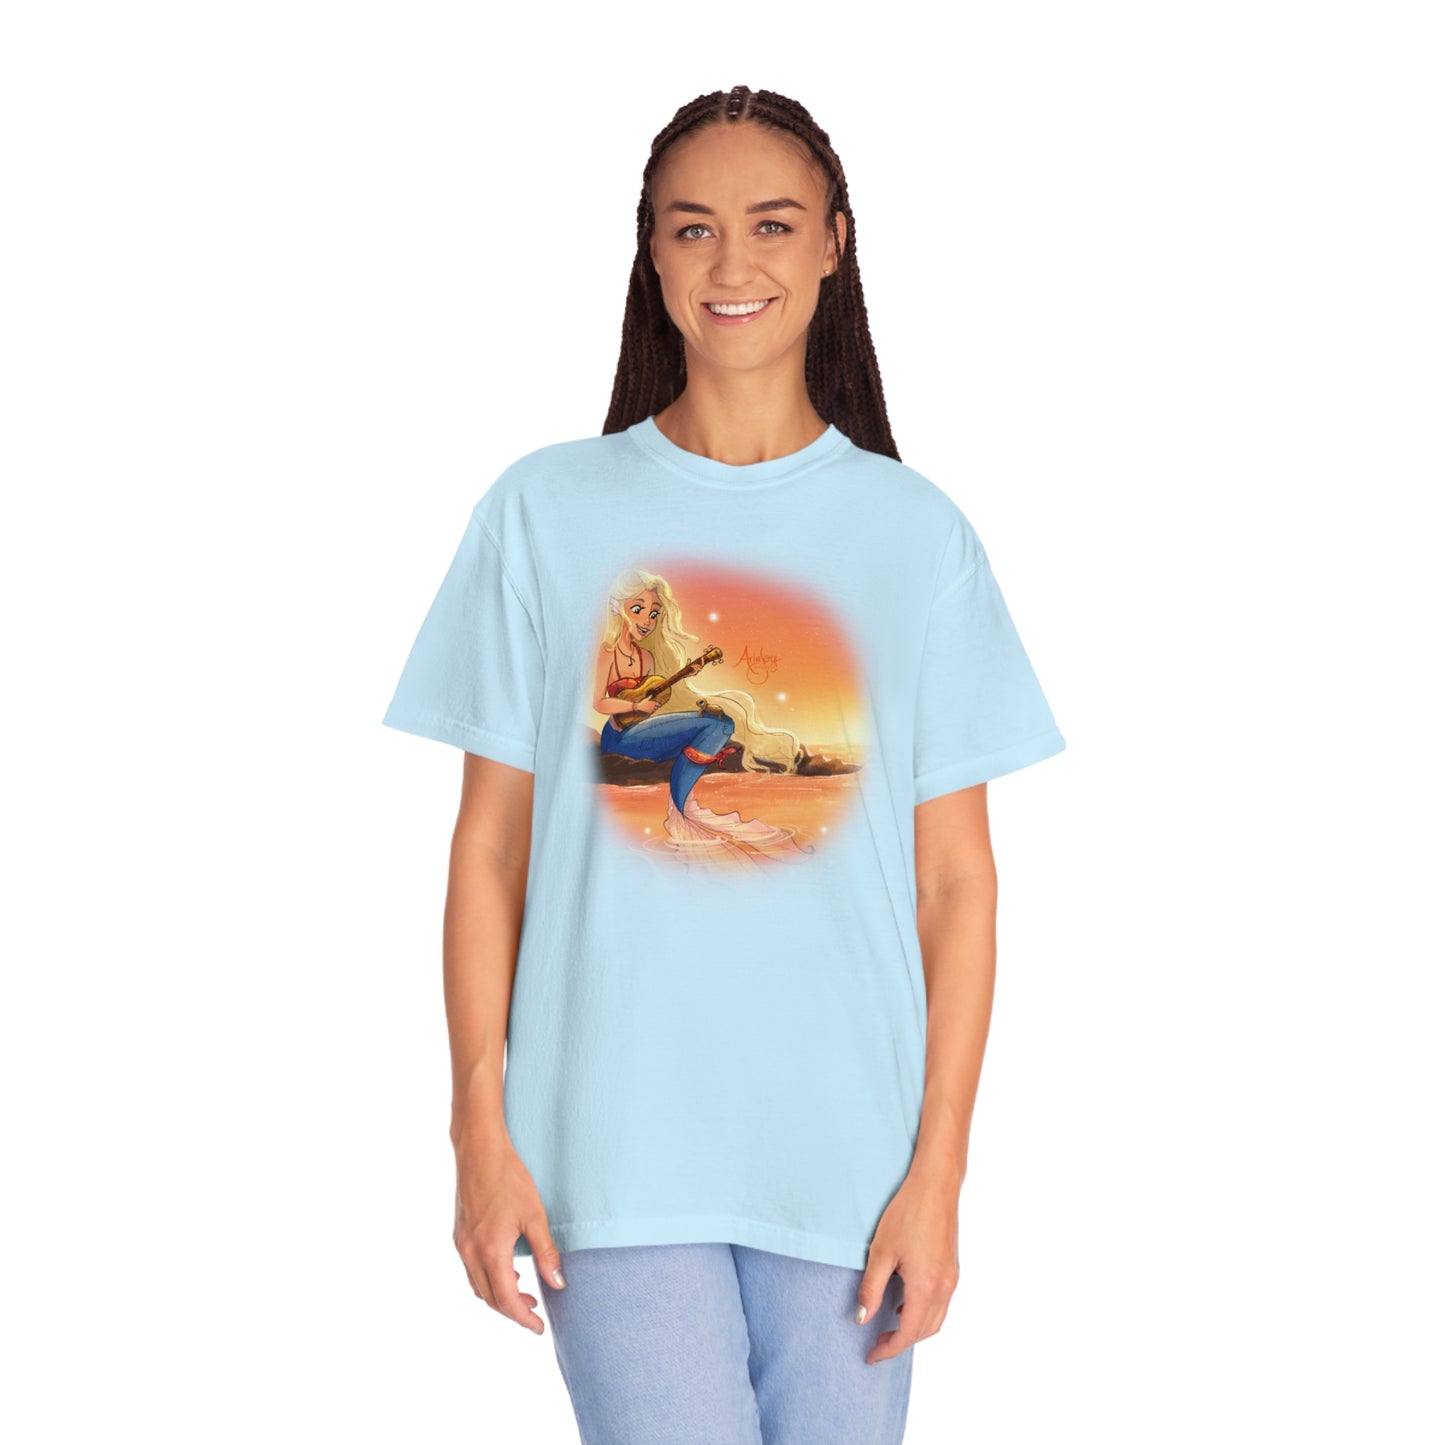 Harmony's Hue - Mermaid T-shirt